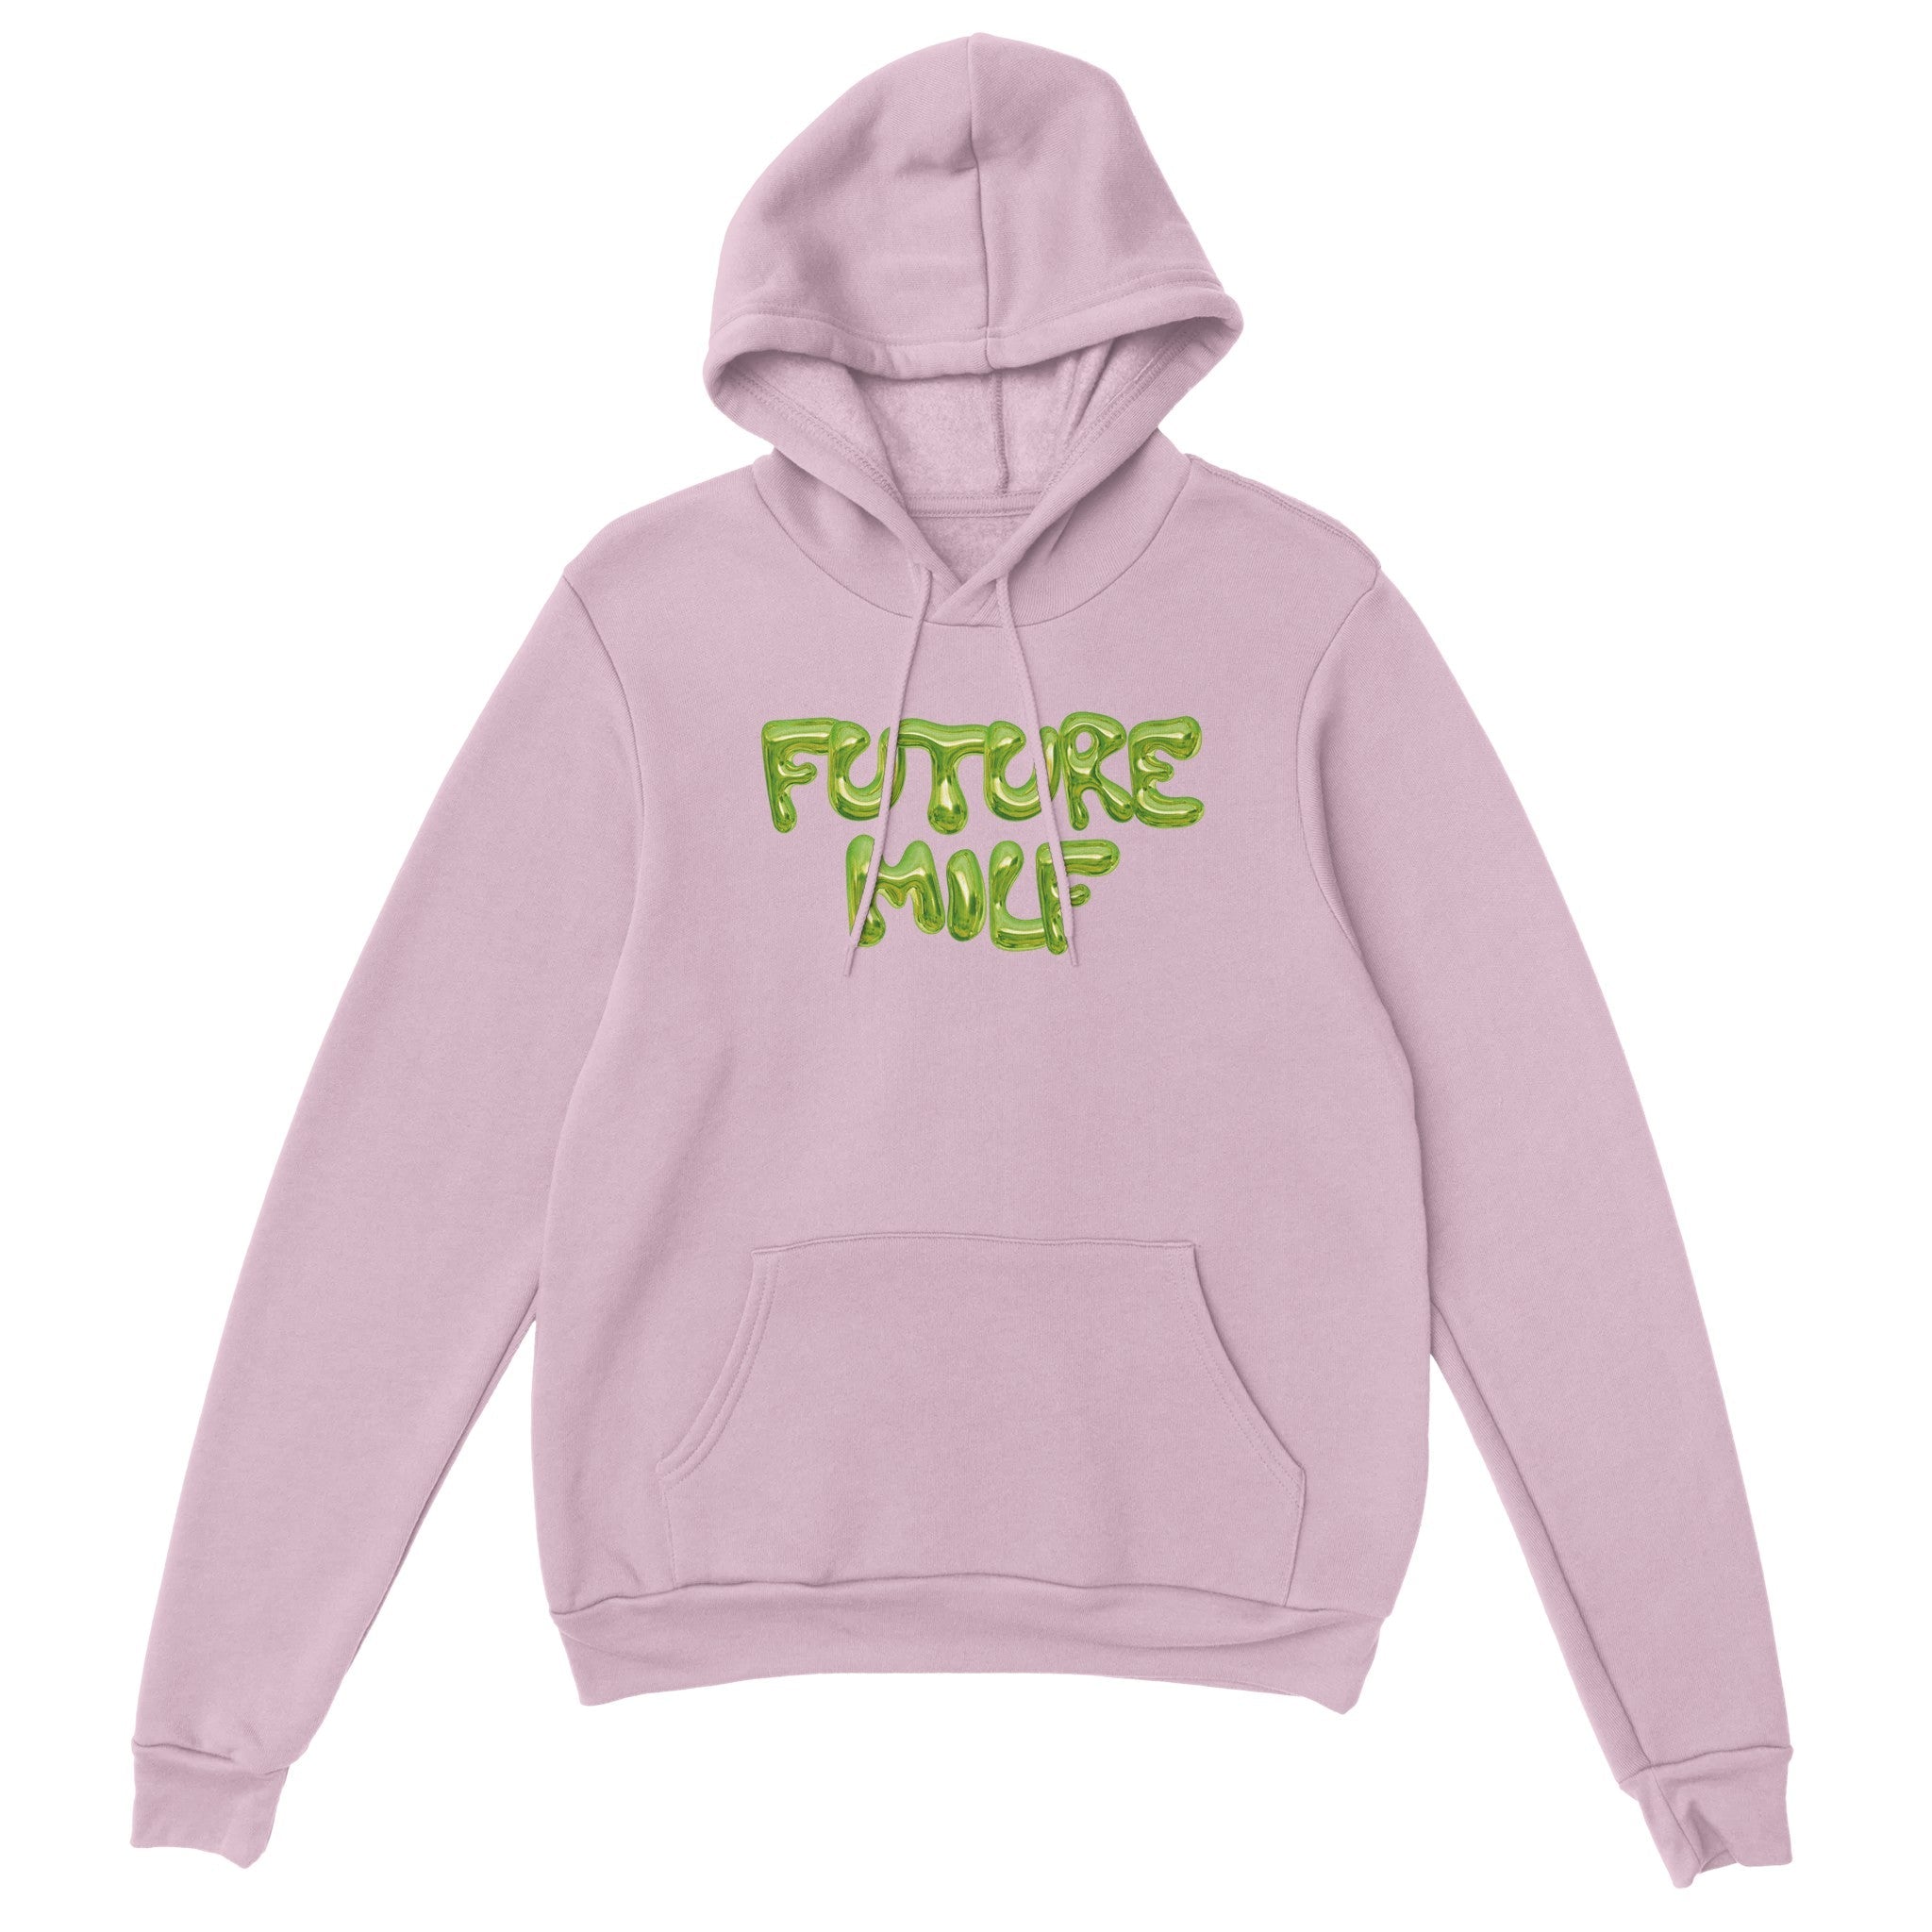 'Future Milf' hoodie - In Print We Trust